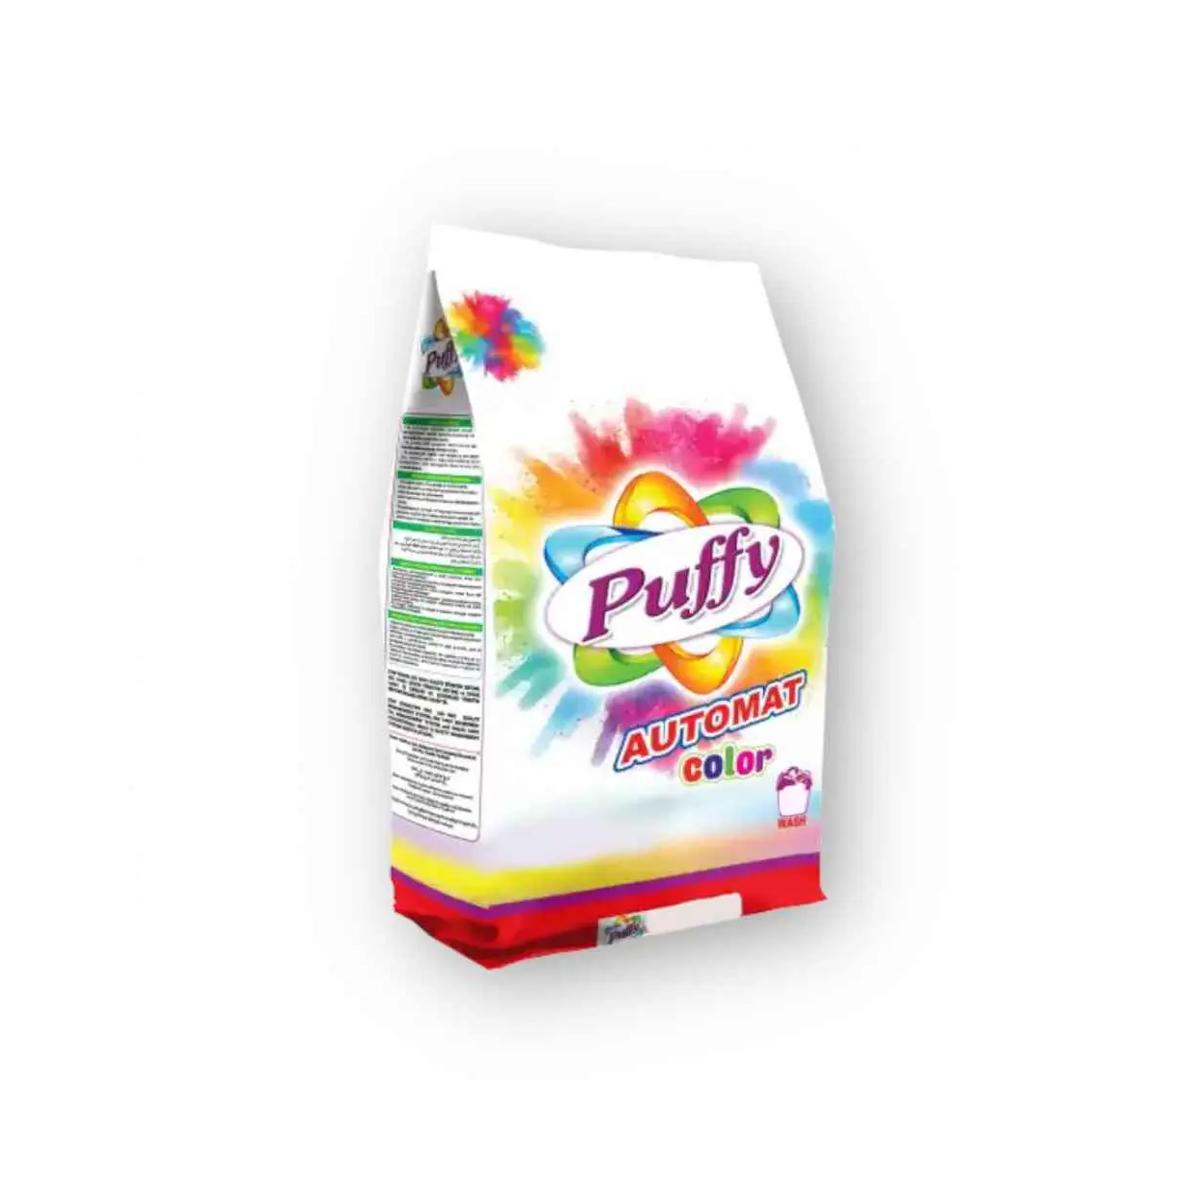 Detergente en polvo para ropa de color Puffy (1.5 kg / 3.3 lb)